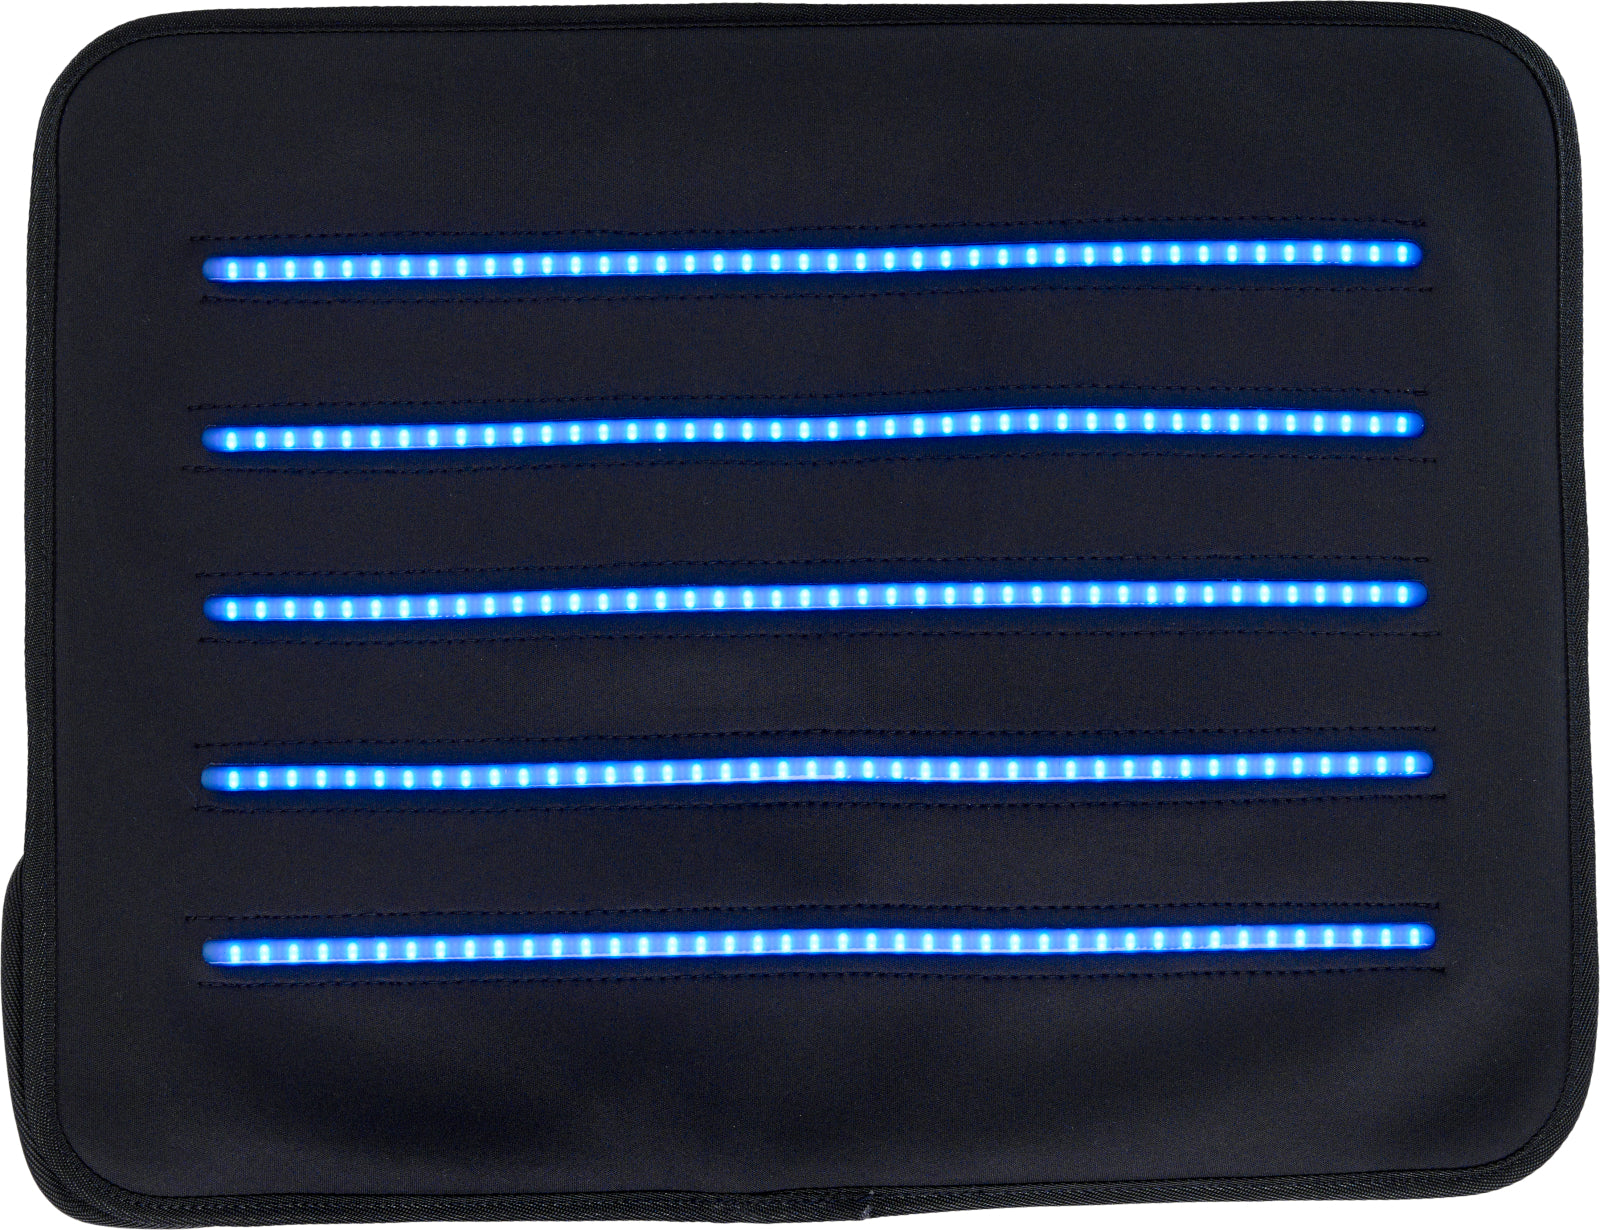 CATAGO FIR-Tech LED Q27 Pad - Equinics